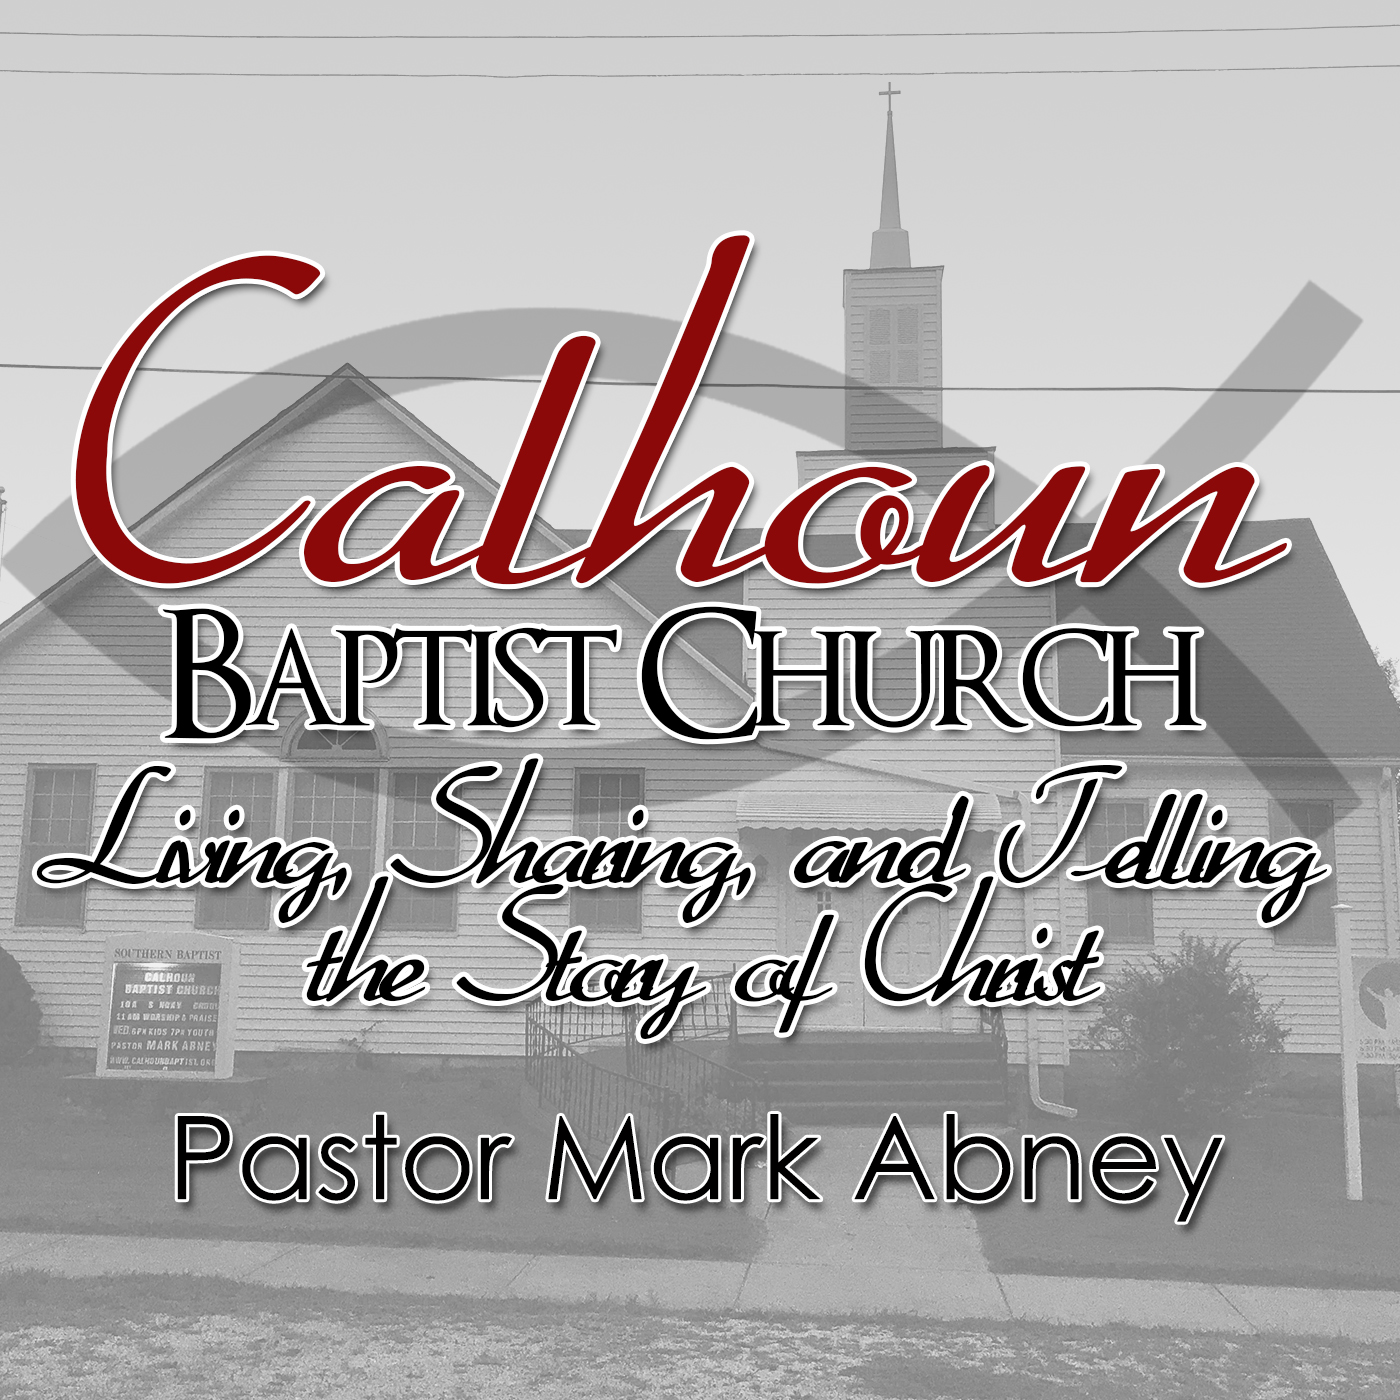 Calhoun Baptist Church